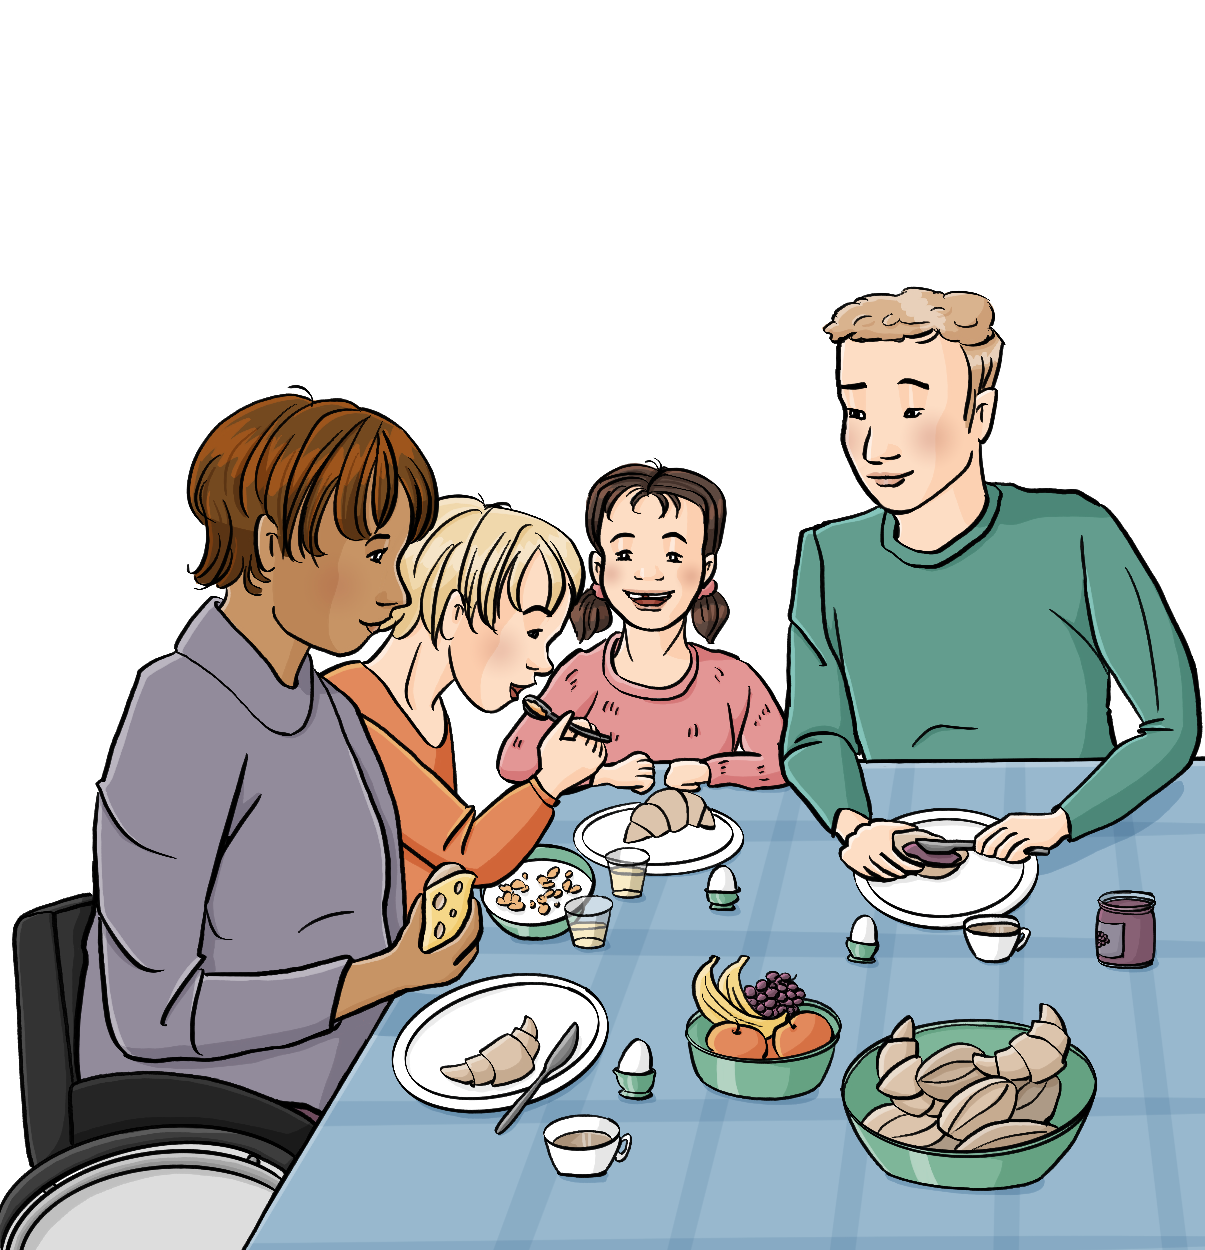 Ein Mann, eine Frau, ein Mädchen und ein Junge sitzen am Tisch. Auf dem Tisch stehen Teller, Tassen und Schüsseln mit Obst und Brötchen. Alle schauen glücklich.